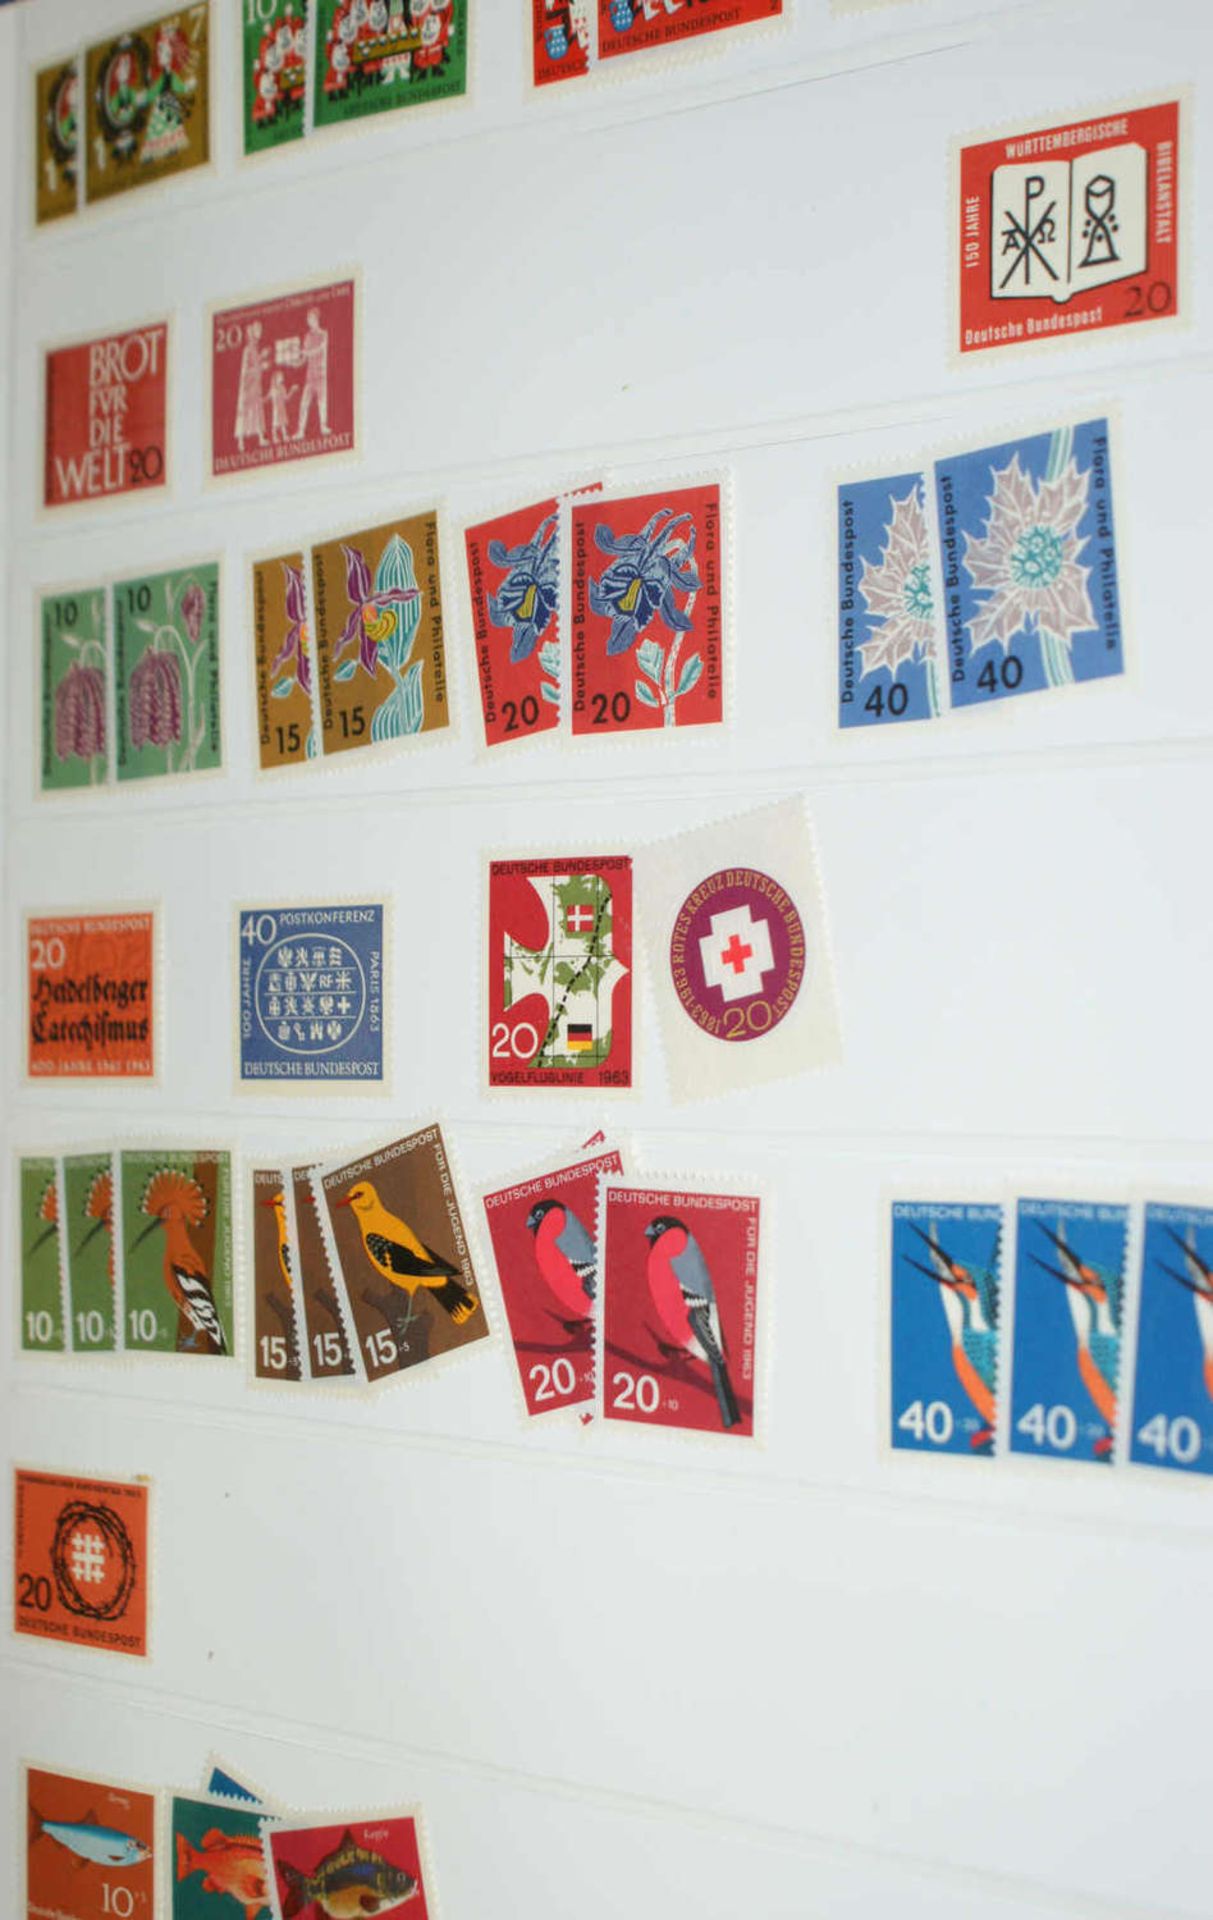 BRD - Briefmarken Dubletten Konvolut, bestehend aus 23 Alben, teilweise schlecht gelagert. - Bild 3 aus 5